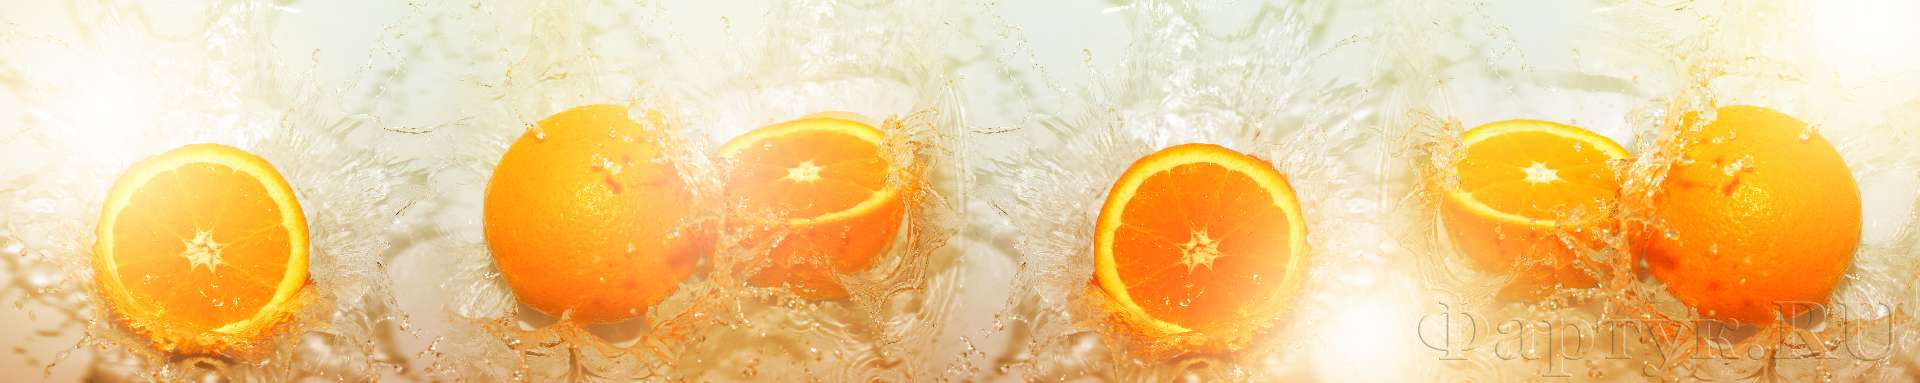 Апельсины в воде